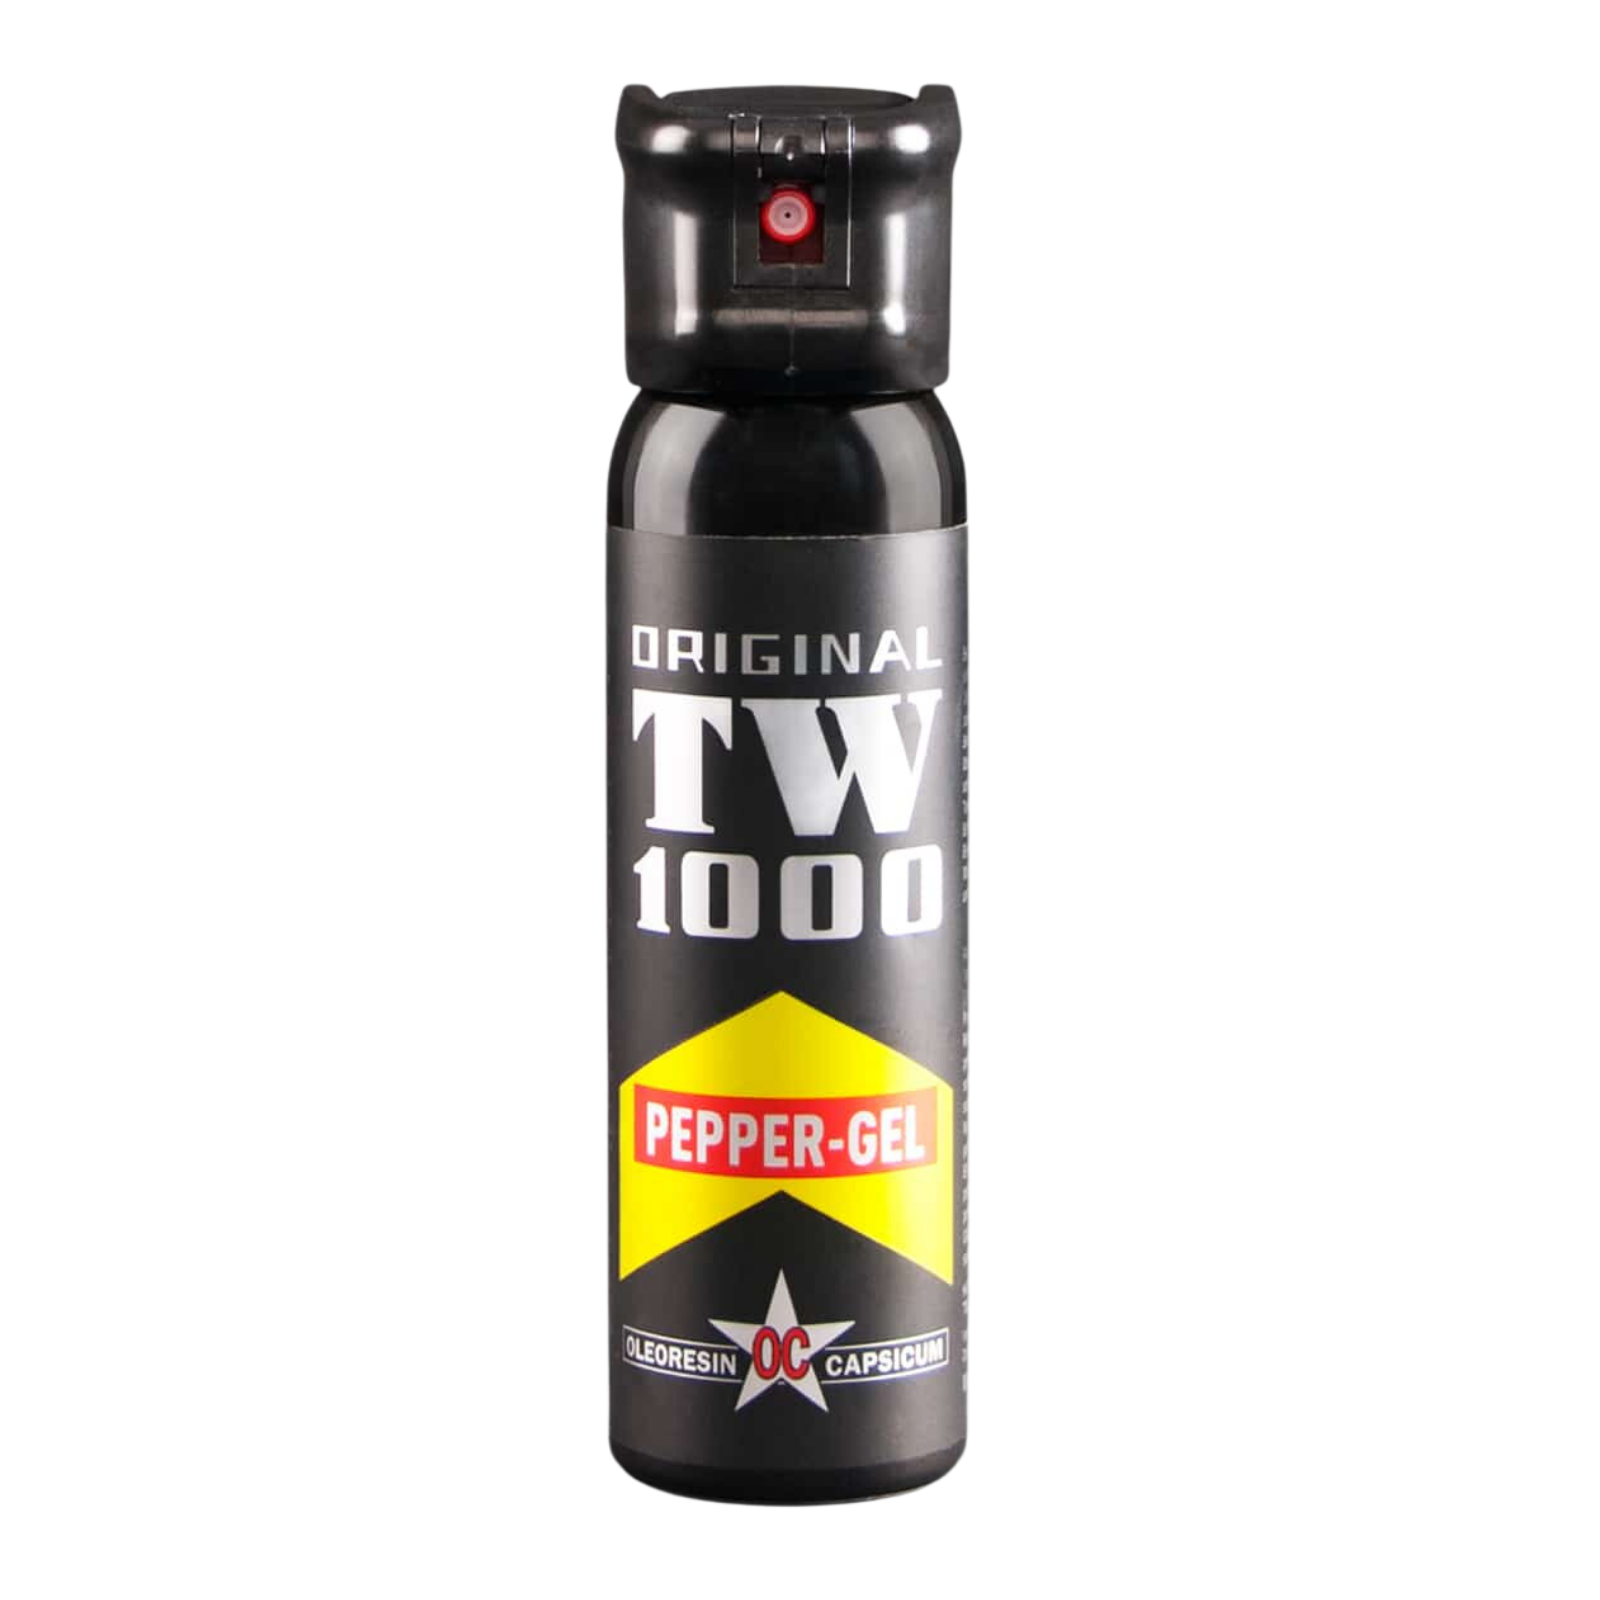 Spray defensa personal de extracto de pimienta contra agresores